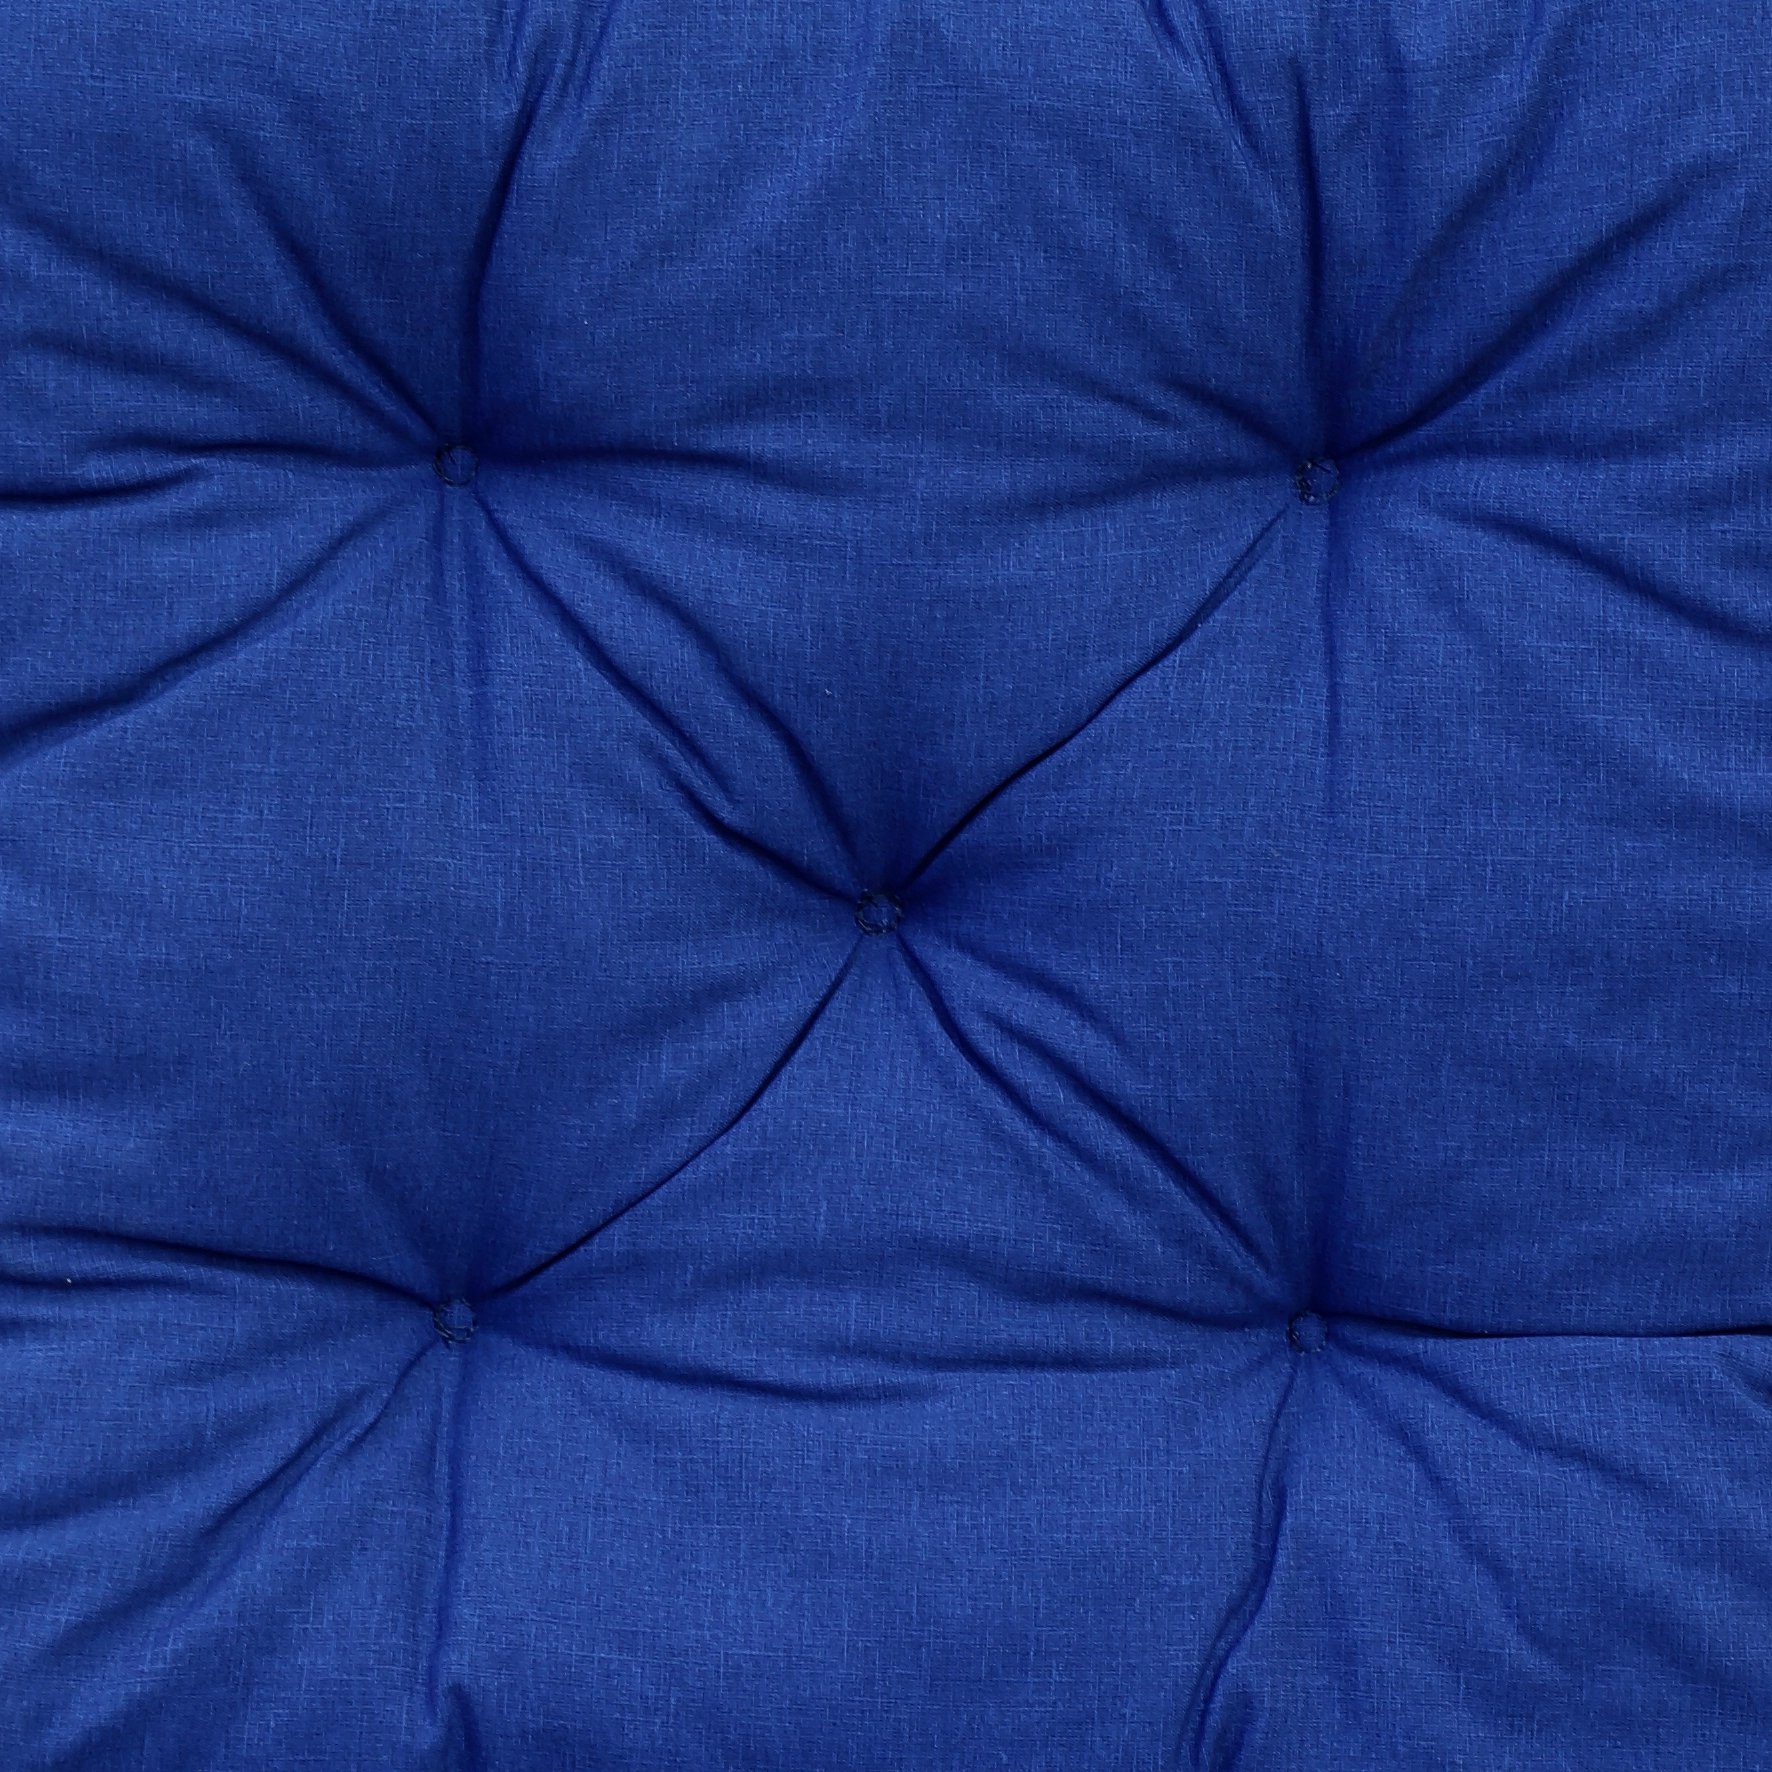 Stoff! Rückenteil, Palettenkissen Feeling blau inkl. Home UV-beständiger Palettenkissen 120x80cm//120x60cm,